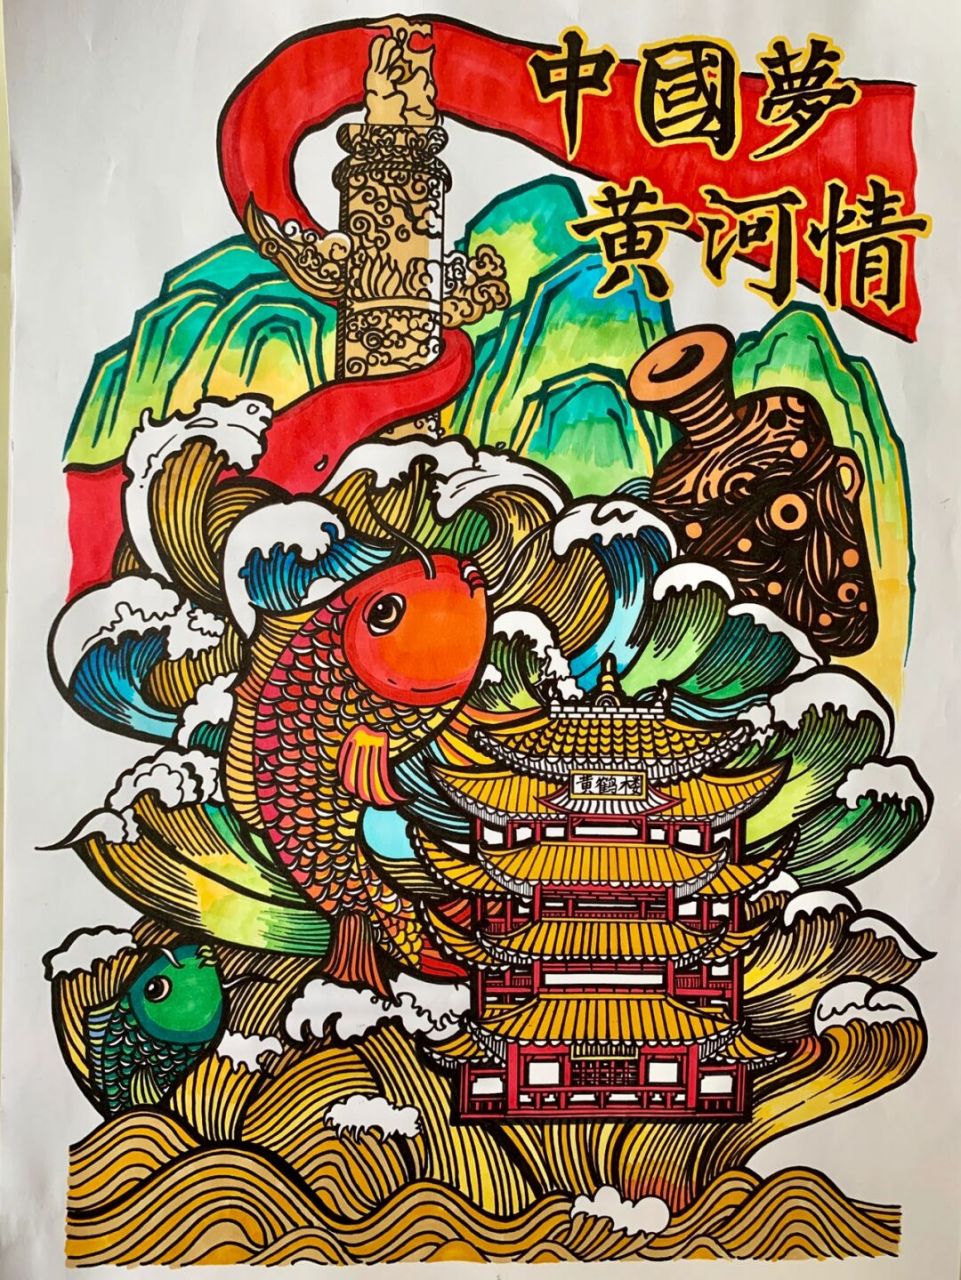 中国梦61黄河情主题绘画 95中国梦61黄河情98可以参考中国画